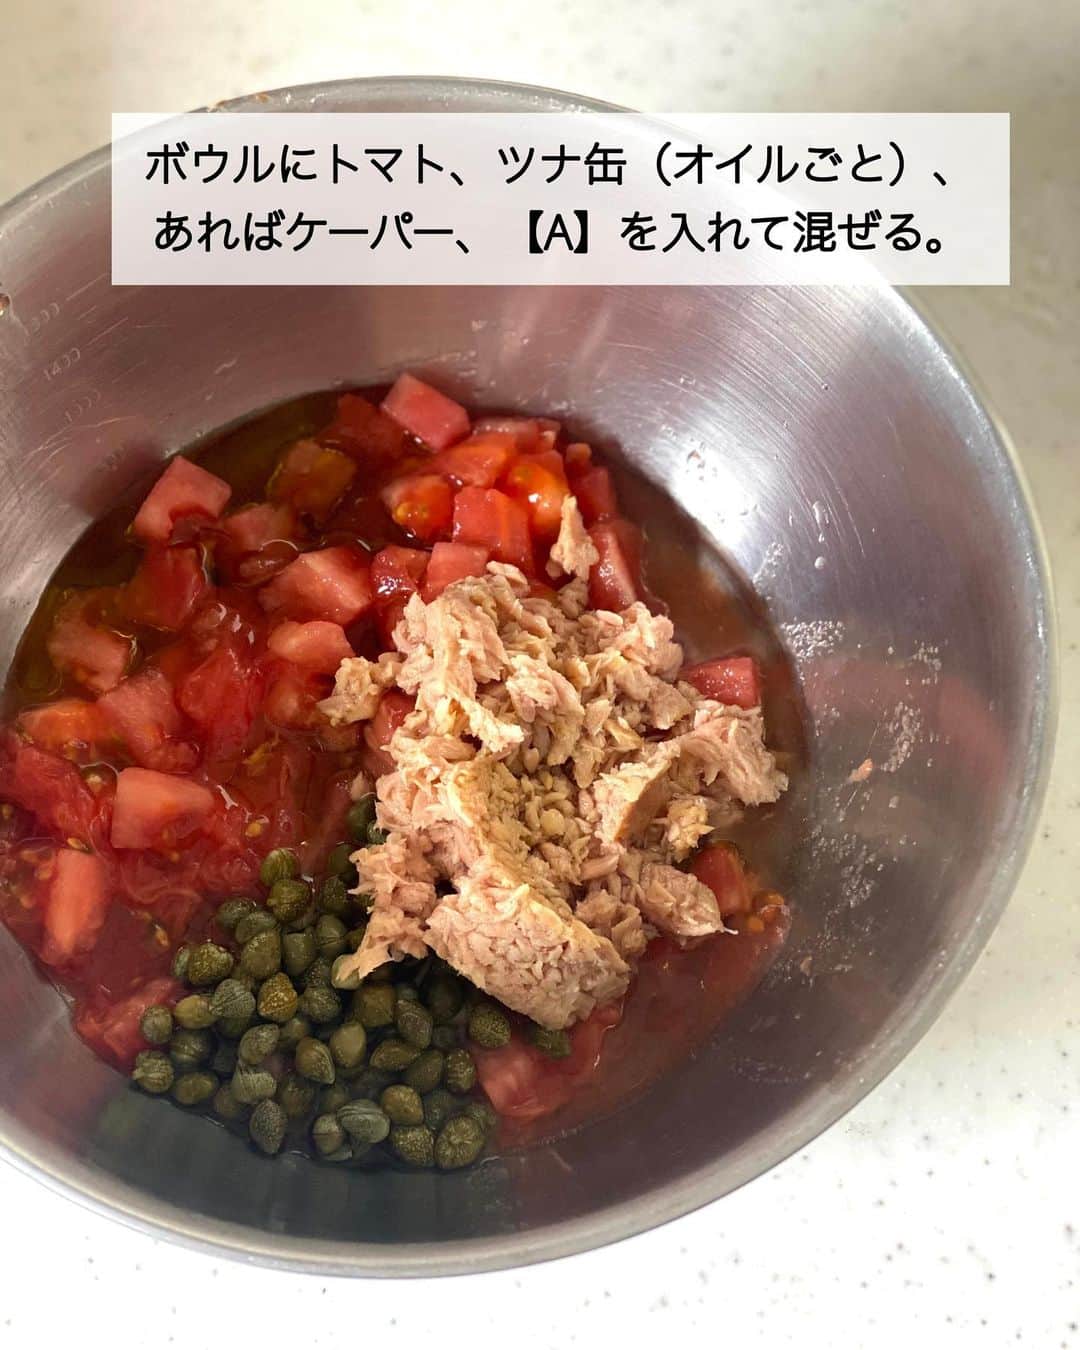 ちおりさんのインスタグラム写真 - (ちおりInstagram)「【この夏食べたい冷製パスタ🍅】 ⁡ ⁡ 他のレシピを見る→ @chiori.m.m をチェック✅ ⁡ ⁡ ━︎━︎━︎━︎━︎━︎━︎━︎━︎━︎━︎━︎━︎━︎━︎━︎━︎ トマトとツナで冷たいプッタネスカ風 ⁡ Nadiaレシピ🆔 460184 ━︎━︎━︎━︎━︎━︎━︎━︎━︎━︎━︎━︎━︎━︎━︎━︎━︎ ⁡ ⁡ ⁡ こんばんは(^^) ⁡ 今日は夏野菜を使った プッタネスカ風の冷製パスタ🍝 ⁡ トマトは湯むきして細かく切り、ツナ缶、 調味料を混ぜ合わせ、パスタと和えたら完成の 超簡単メニューです✨ ⁡ アンチョビの代わりにツナ缶、唐辛子の代わりに 「ピエトロ CHILLIES!」を使って 辛味とうま味をプラスしています。 ⁡ 具材には酢漬けのケーパーも加えていますが なくてもOK。 代わりにお酢少々を足していただけると🙆🏻‍♀️ 食欲が無い日も食べやすく美味しいので 良かったら作ってみてください！ ⁡ ⁡ ⁡ ✎＿＿＿＿＿＿＿＿＿＿＿＿＿＿＿＿＿＿＿＿＿ ⁡ ⁡ 今回のレシピにてピエトロさんの 商品をご紹介するのが最後となりました。 ピエトロさん大ファンなので卒業するのが 寂しいです🥹 ⁡ 長い間ご覧いただきありがとうございました✨ そしてたくさんのレシピをお試しいただき 感謝の気持ちでいっぱいです🙇🏻‍♀️ ⁡ 今後もNadiaさんではピエトロキャンパスは続き 新しい料理家さんが美味しいレシピをお届けしてくれますので楽しみにしていてくださいね^ ^ ⁡ ⁡ ________________________________________ ⁡ ⁡ ✍︎ ✍︎recipe ✍︎ ✍︎ ⁡ ⁡ 👩‍🌾【材料】2人分 •ピエトロ AGNESI(アネージ) スパゲティーニ…160g •トマト…………………………2個（300g） •ツナ缶（油漬け）…………1缶（70g） •あればケーパー……………20g •青ねぎ…………………………適量 Aオリーブオイル……………大さじ2 A砂糖、コンソメ顆粒………各小さじ1 Aにんにくチューブ…………小さじ1/2 A塩………………………………ふたつまみ A ピエトロCHILLIES ! ………適量 ⁡ ⁡ ________________________________________ ⁡ ⁡ ⁡ 👩‍🍳【作り方】 ❶鍋に湯を沸かし、トマトを入れる。20秒ほどして皮がめくれてきたら取り出し、冷水に浸けて皮をむく。1cm角に切る。 ⁡ ❷ボウルに❶、ツナ缶（オイルごと）、あればケーパー、【A】を入れて混ぜる。 ⁡ ❸鍋にたっぷりの湯を沸かして塩(分量外)を袋の表示通りに入れ、「ピエトロ AGNESI(アネージ) スパゲティーニ 1.5mm」を表示時間通りにゆでる。湯切りし、流水で冷やしてよく水気を切る。 ⁡ ❹、❷のボウルに❸を入れて和える。 器に盛り、小口切りにした青ねぎを散らし お好みで粗びき黒こしょうをふる。 ⁡ ⁡ ⁡ ________________________________________ ⁡ ⁡ ⁡ 📝【POINT】 •ケッパーを使わない場合はお酢を少々加えてください。 ⁡ •砂糖、塩の量はお好みで調整してください。 ⁡ •ピエトロ CHILLIES! はさらに仕上げにかけても美味しいです。 ⁡ ⁡ ⁡ ≡︎≡︎≡︎≡︎≡︎≡︎≡︎≡︎≡︎≡︎≡︎≡︎≡︎≡︎≡︎≡︎≡︎≡︎≡︎≡︎≡︎≡︎≡︎≡︎≡︎≡︎≡︎≡︎≡︎≡︎≡︎≡︎≡︎≡︎ 【✅新刊レシピ本のお知らせ】 📕ちおり流くり返し作りたいおかず 🙇🏻‍♀️おかげ様で書籍累計10万部を突破しました。 ⁡ ⁡ 全国の書店、Amazon、楽天ブックス 宝島チャンネルにて発売中です。 ⁡ ➤ ➤ ➤ @chiori.m.m のストーリーハイライト。 プロフィールのリンクからご覧いただけます😊 📗ちおりの簡単絶品おかず１、２ 既刊もぜひご覧いただきたいです。 ⁡ ≡︎≡︎≡︎≡︎≡︎≡︎≡︎≡︎≡︎≡︎≡︎≡︎≡︎≡︎≡︎≡︎≡︎≡︎≡︎≡︎≡︎≡︎≡︎≡︎≡︎≡︎≡︎≡︎≡︎≡︎≡︎≡︎≡︎≡︎ ⁡ ⁡ 最後までご覧いただきありがとうございます☺️ ⁑ ⁑ ⁑ ⁑ ⁑ ⁑ ⁑ #ピエトロタイアップ #ピエトロキャンパス  #ピエトロ #パスタランチ #パスタレシピ  #Nadiaレシピ #Nadiaartist #トマトレシピ  #おうちごはん #いえごはん #パスタ  #おうちごはんLover #おつまみレシピ #トマトパスタ #冷製パスタ #冷製パスタレシピ   #簡単レシピ #節約レシピ #簡単ランチ  #簡単ごはん #料理レシピ #料理初心者  #ツナ缶 #ツナ缶レシピ #パスタ好き」6月9日 21時11分 - chiori.m.m